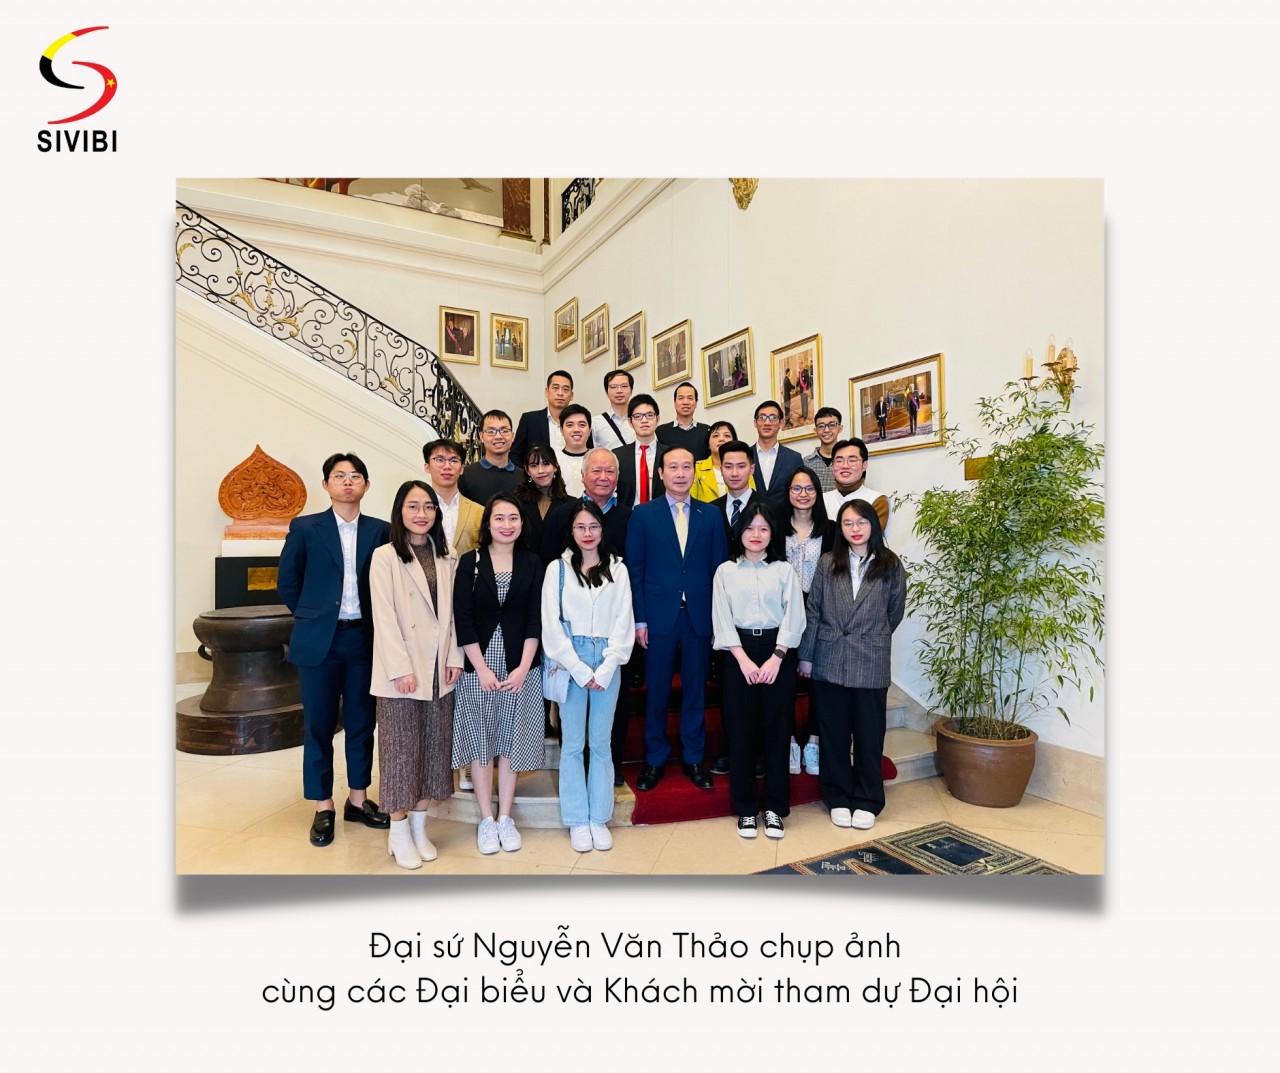 Hội Sinh viên Việt Nam tại Bỉ nỗ lực gắn kết cộng đồng